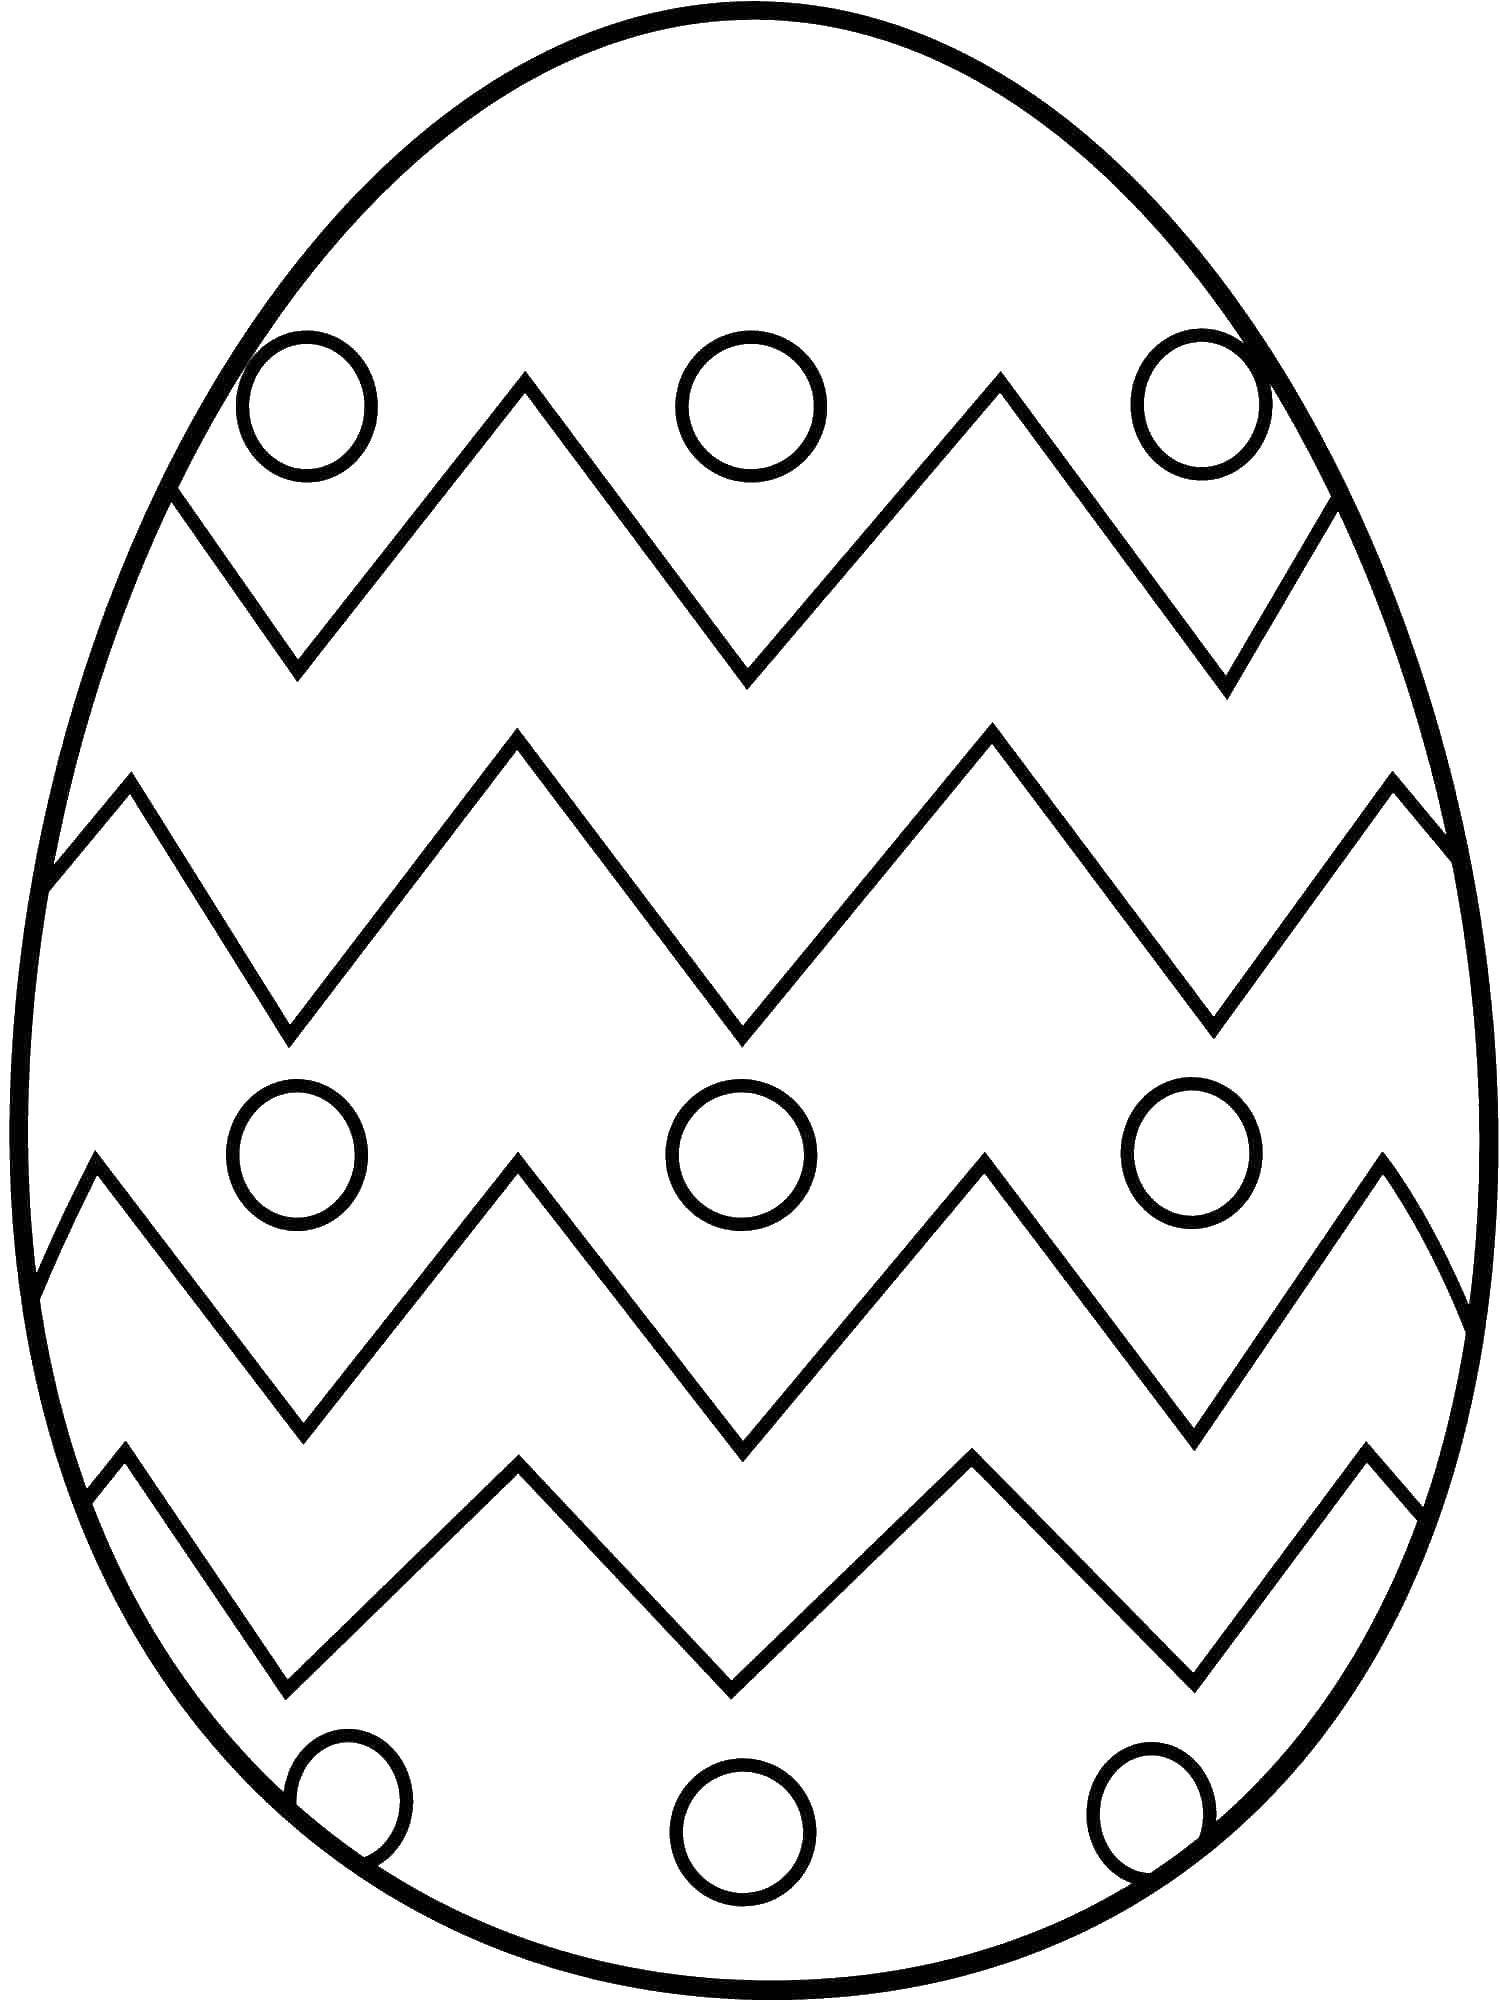 Название: Раскраска Чередующийся узор. Категория: Узоры для раскрашивания яиц. Теги: Пасха, яйца, узоры.